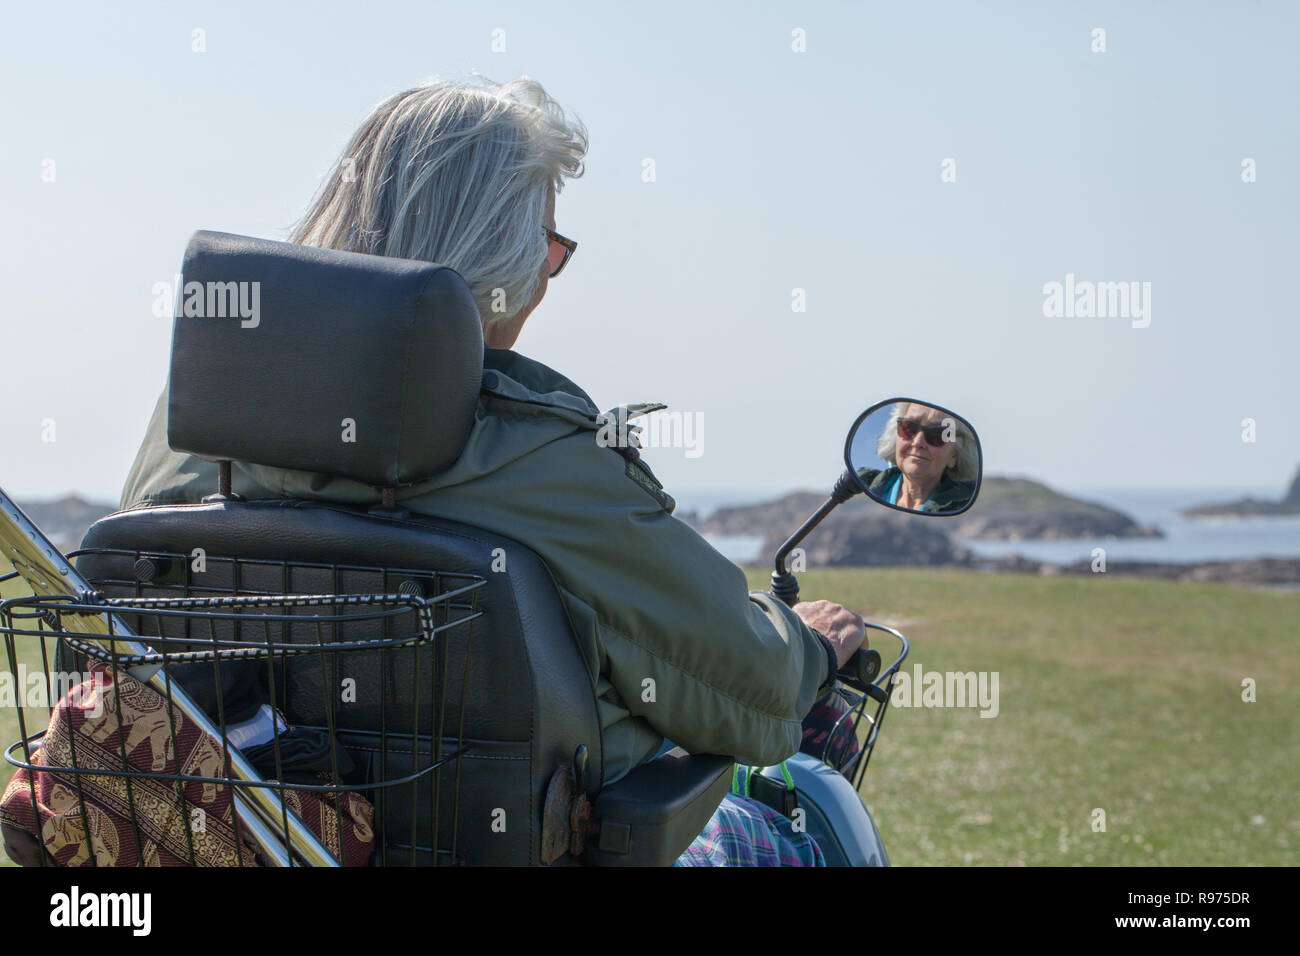 Mobilità consentendo Buggy disabili, ​or disabili senior citizen, un visitatore ​holiday, per accedere ed esplorare l'isola di Iona. Costa ovest della Scozia.​ Foto Stock